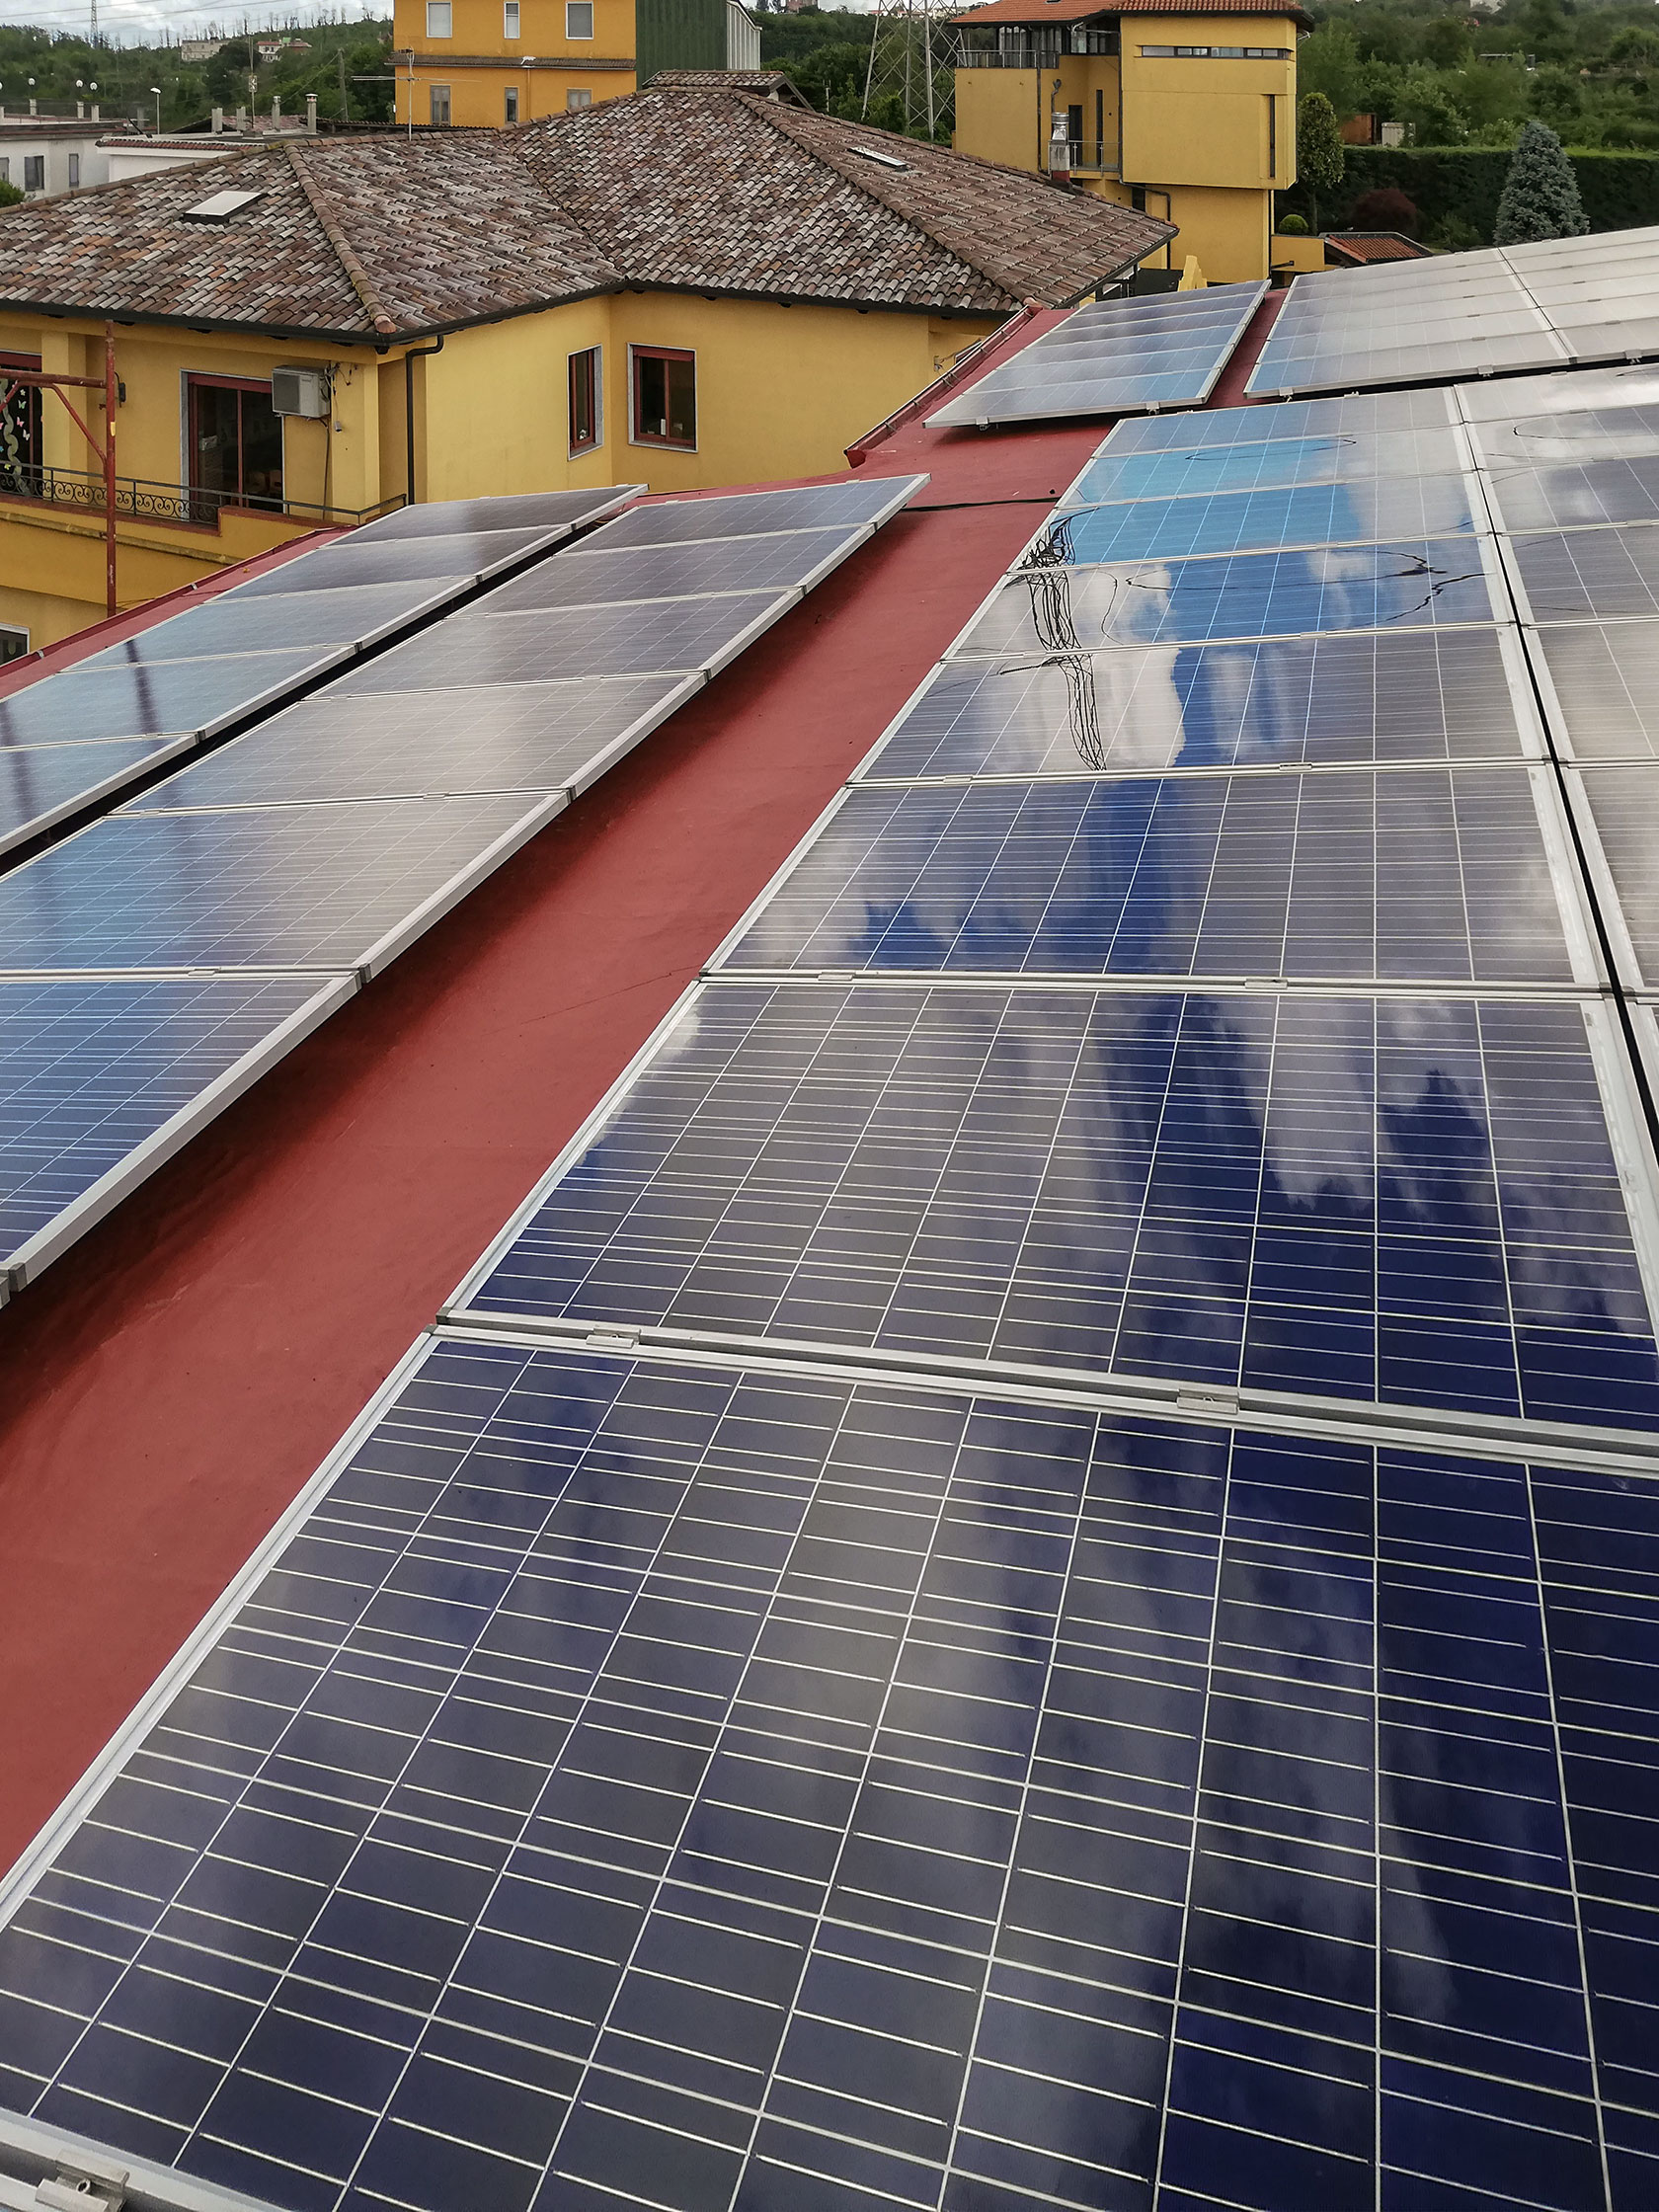 Impianto Fotovoltaico 20 kWp + batteria Tesla 14 Kwh - Marano di Napoli, (Napoli) DMT Solar impianti fotovoltaici in tutta Italia residenziale e aziendale business, installatore certificato Tesla Powerwall e Sunpower Maxeon